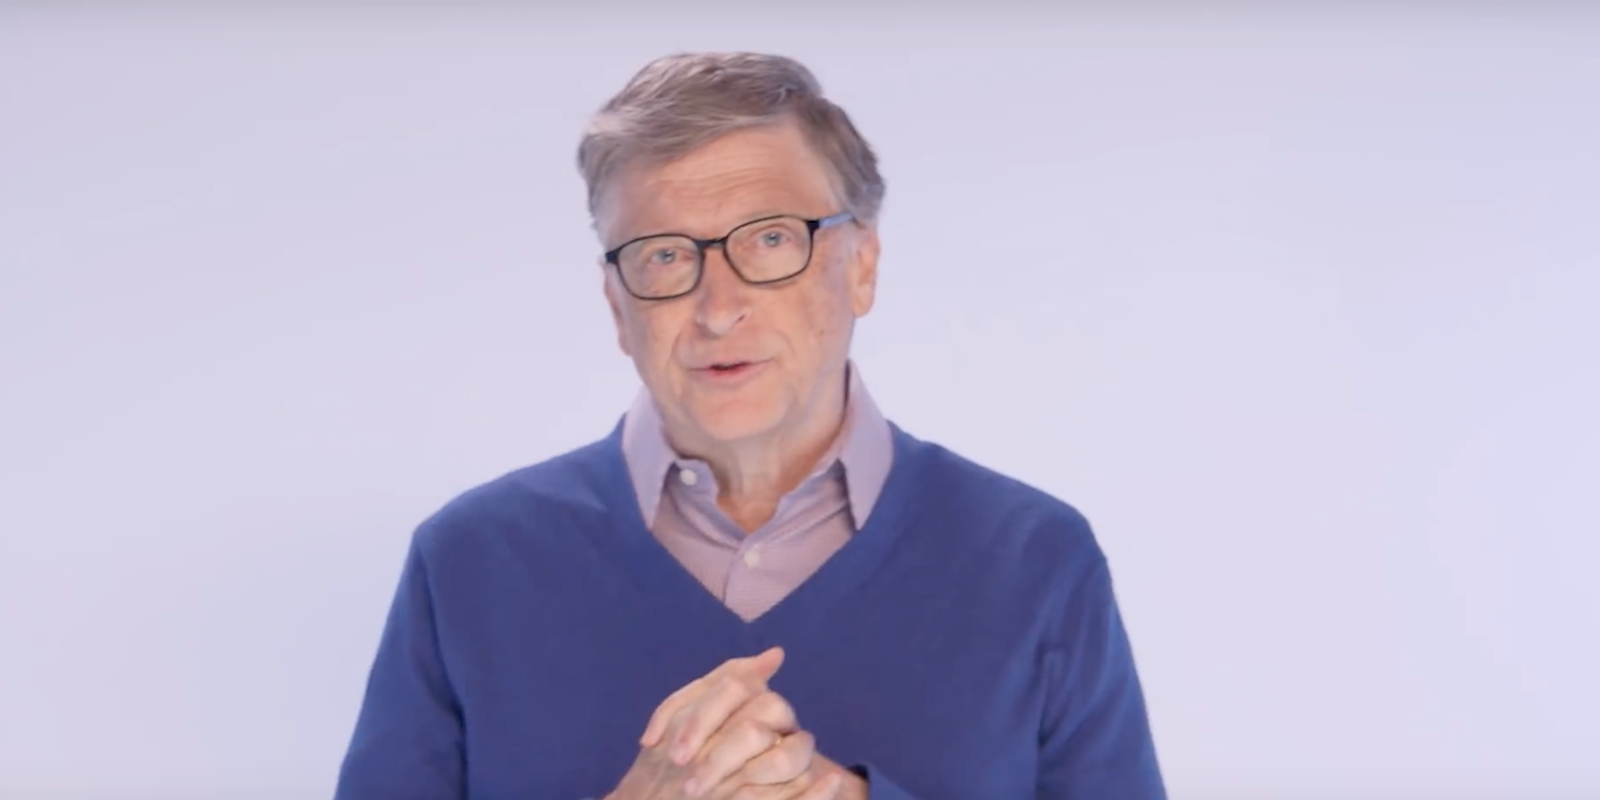 Bill Gates overpopulation video